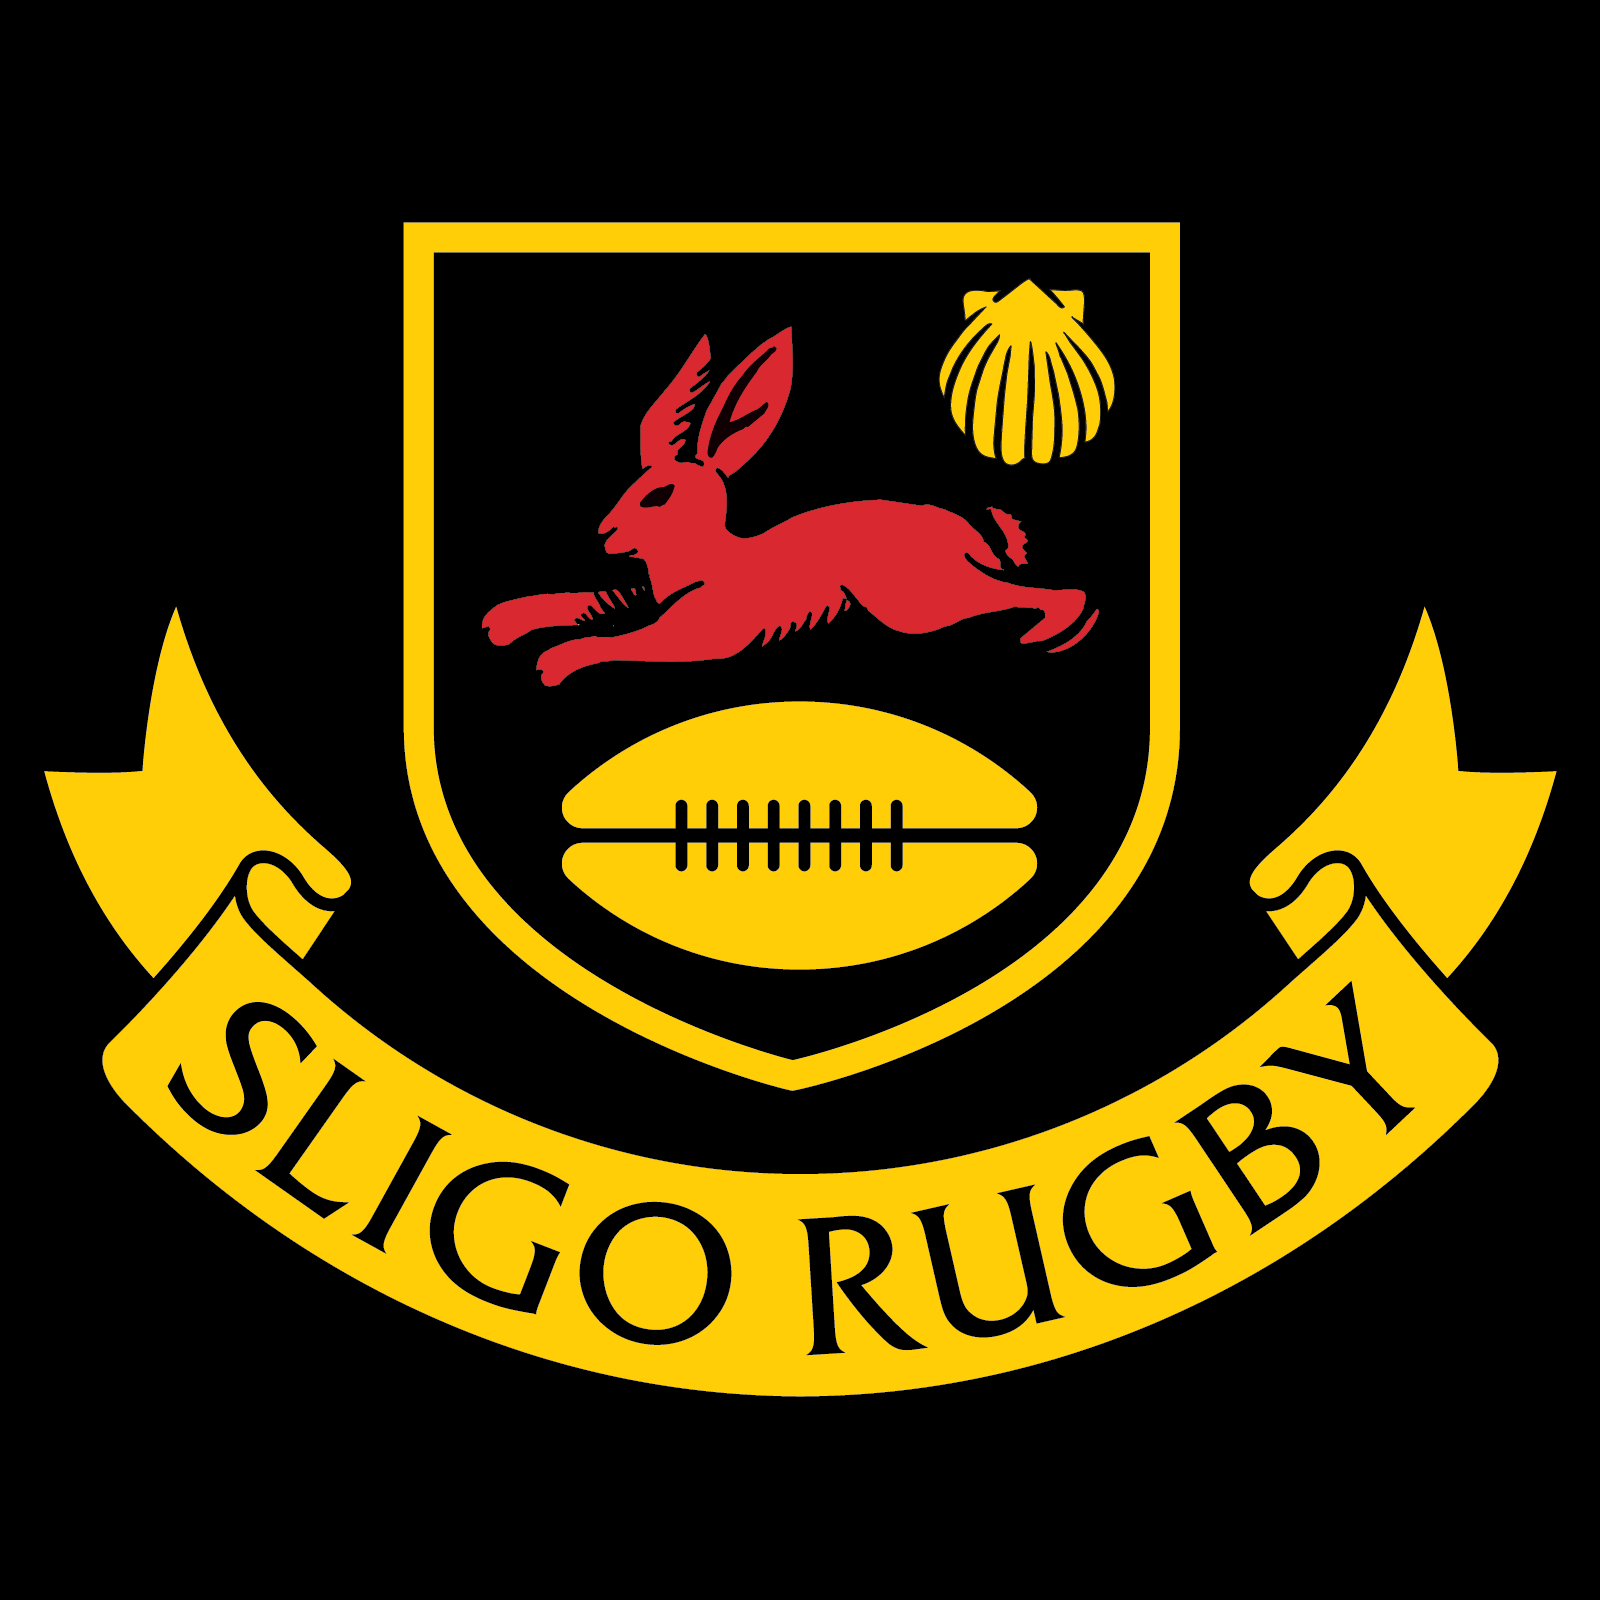 Sligo Rugby